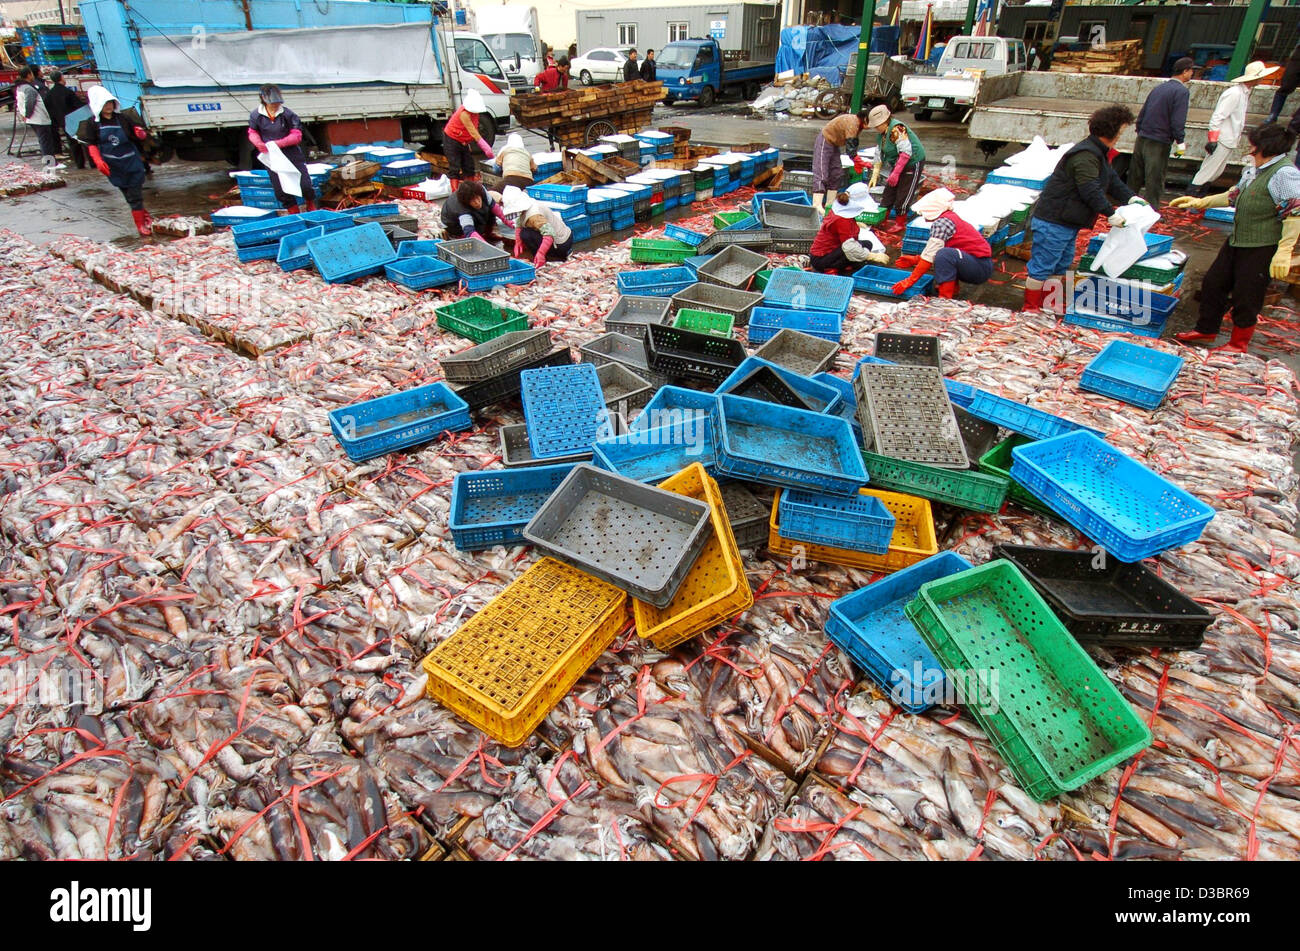 (Dpa) - Lavoratori ordina i carichi di prodotti freschi frish che è stato consegnato da barche da pesca presso il mercato del pesce di Busan, Corea del Sud, il 19 dicembre 2004. Di pesce, cozze e calamari sono i principali dieta in Corea del Sud. Foto Stock